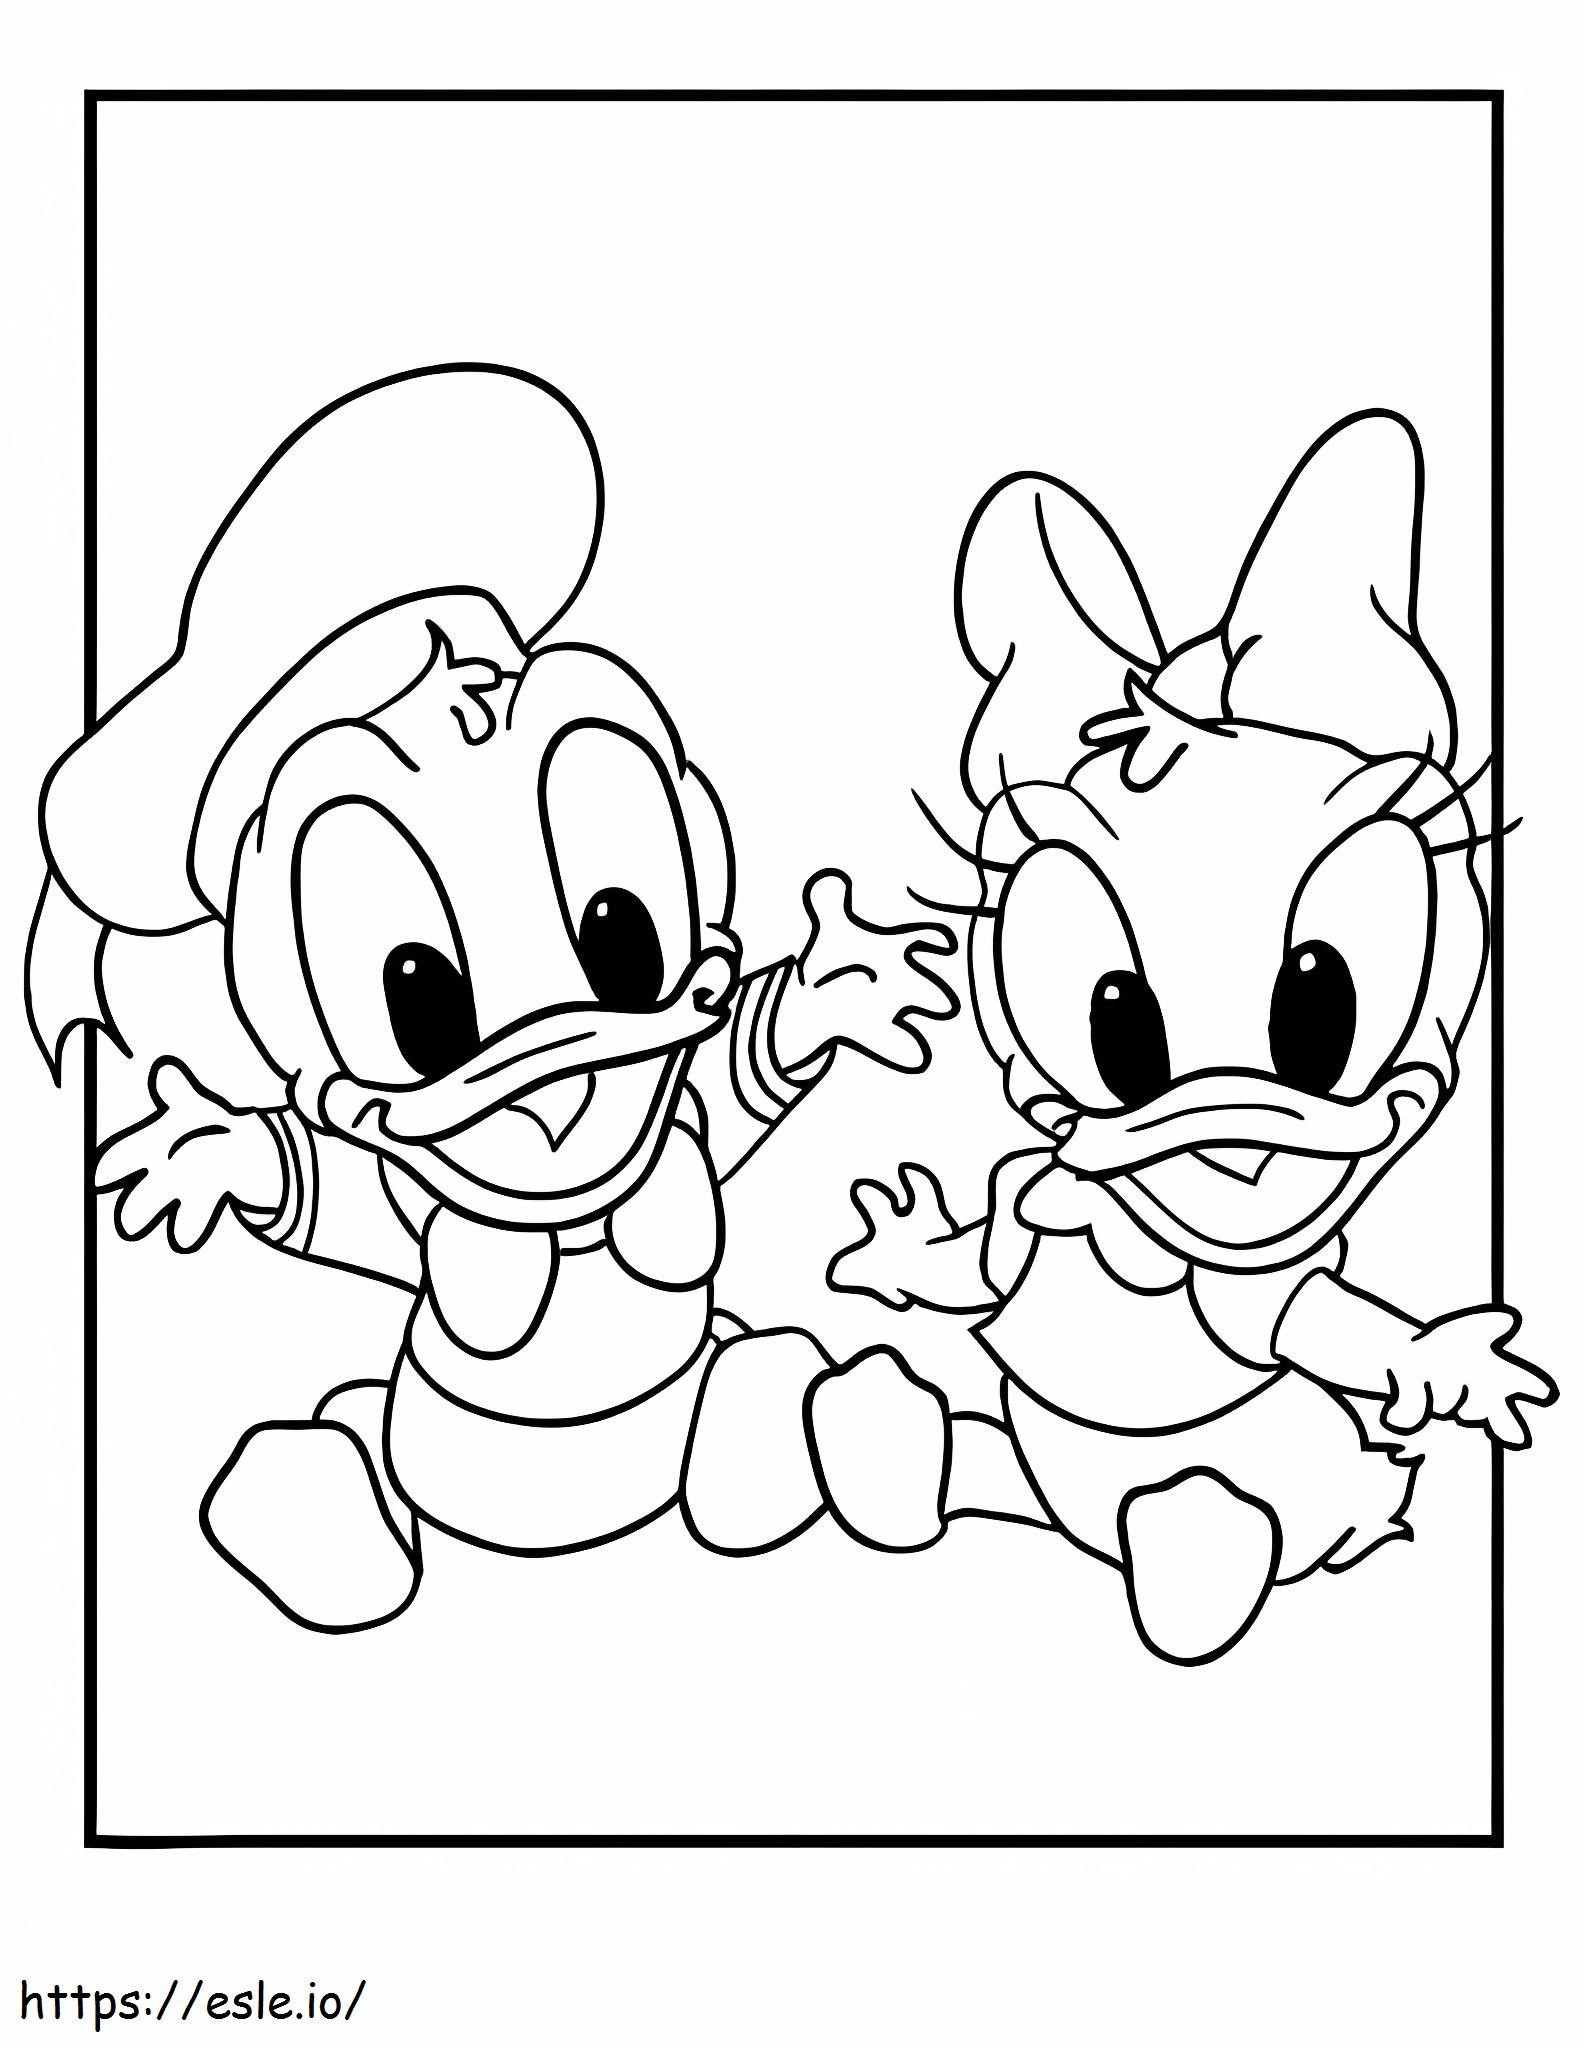 Desenhos para Imprimir Disney - Colorir o Donald - Desenhos para Imprimir